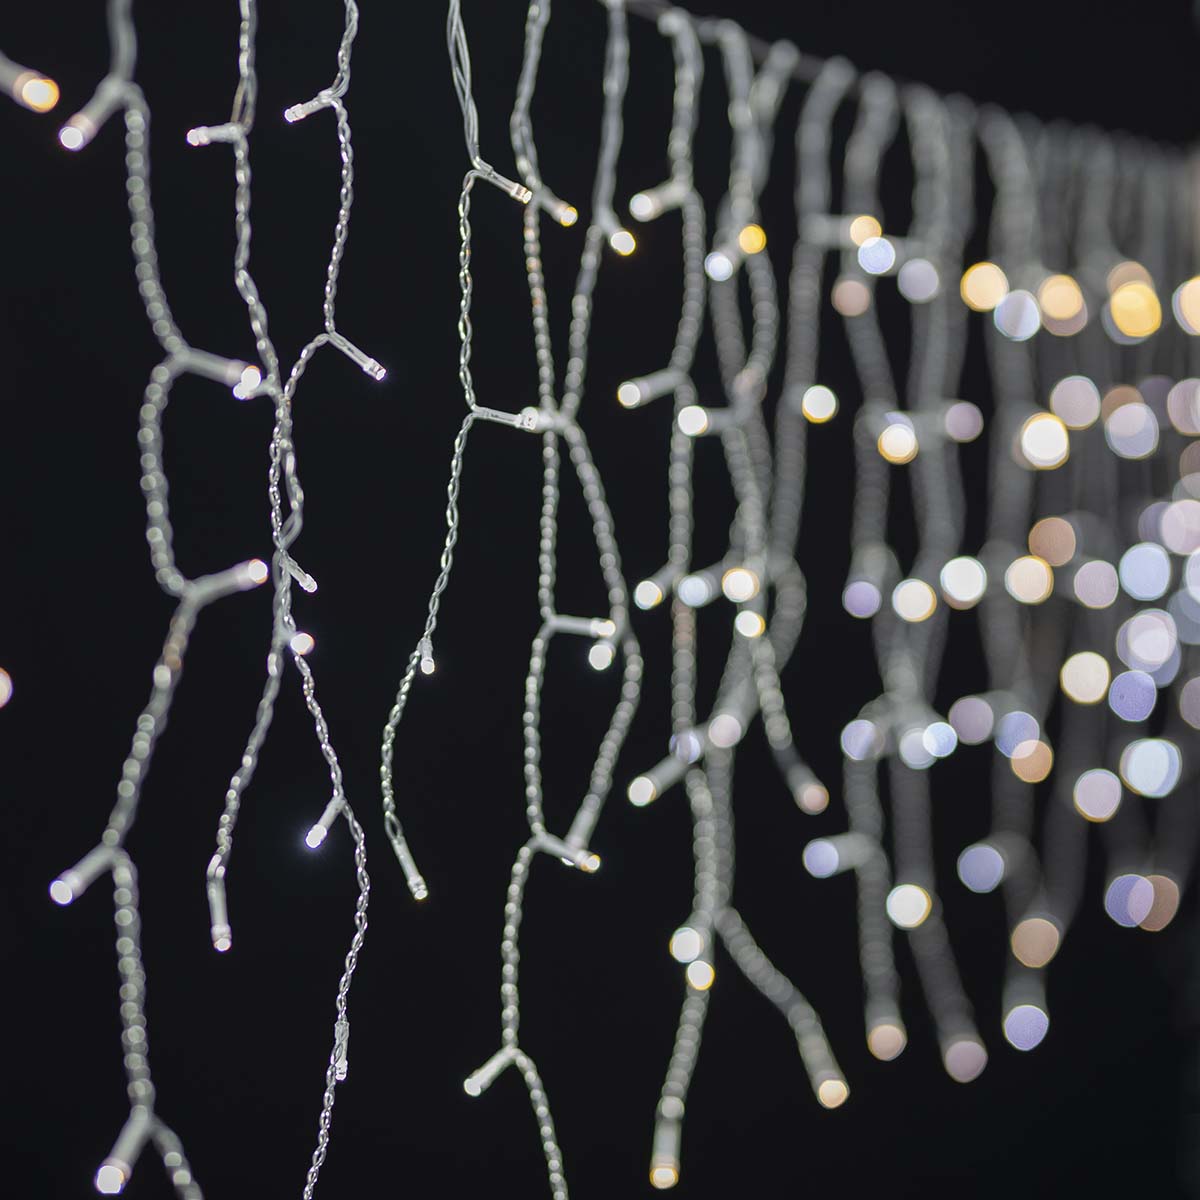 Grinalda Nedis de 5m, 240 LEDs quente/frio: iluminação de Natal inteligente em 48 gotas, proporcionando charme versátil.